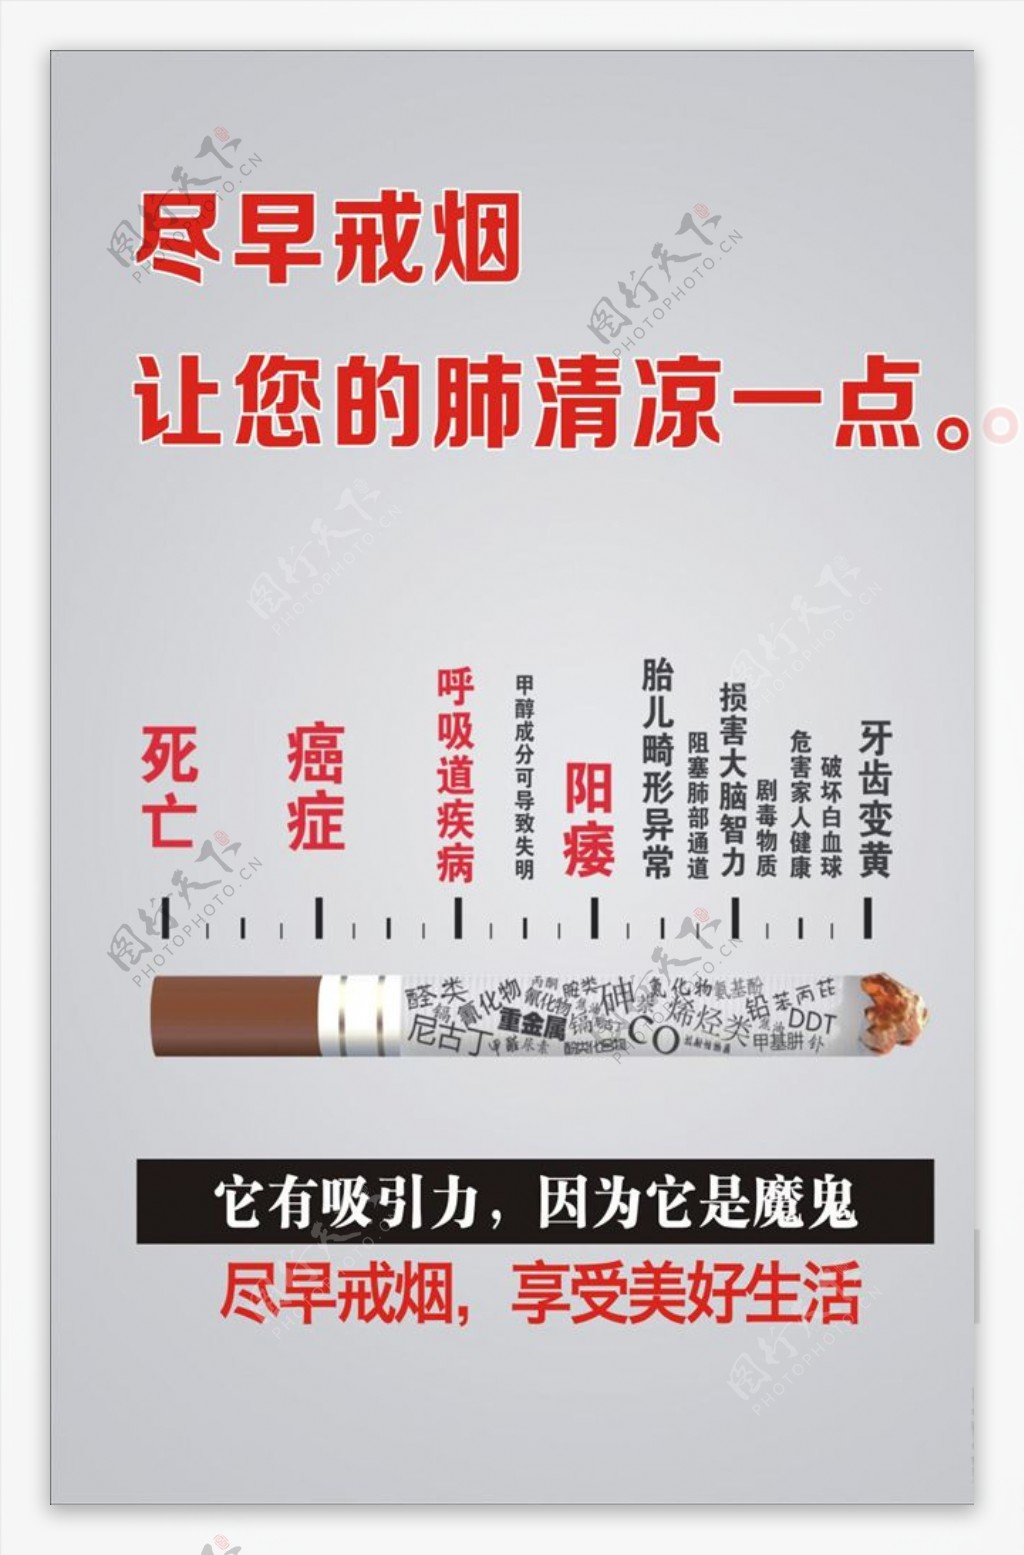 戒烟广告宣传活动模板源文件设计